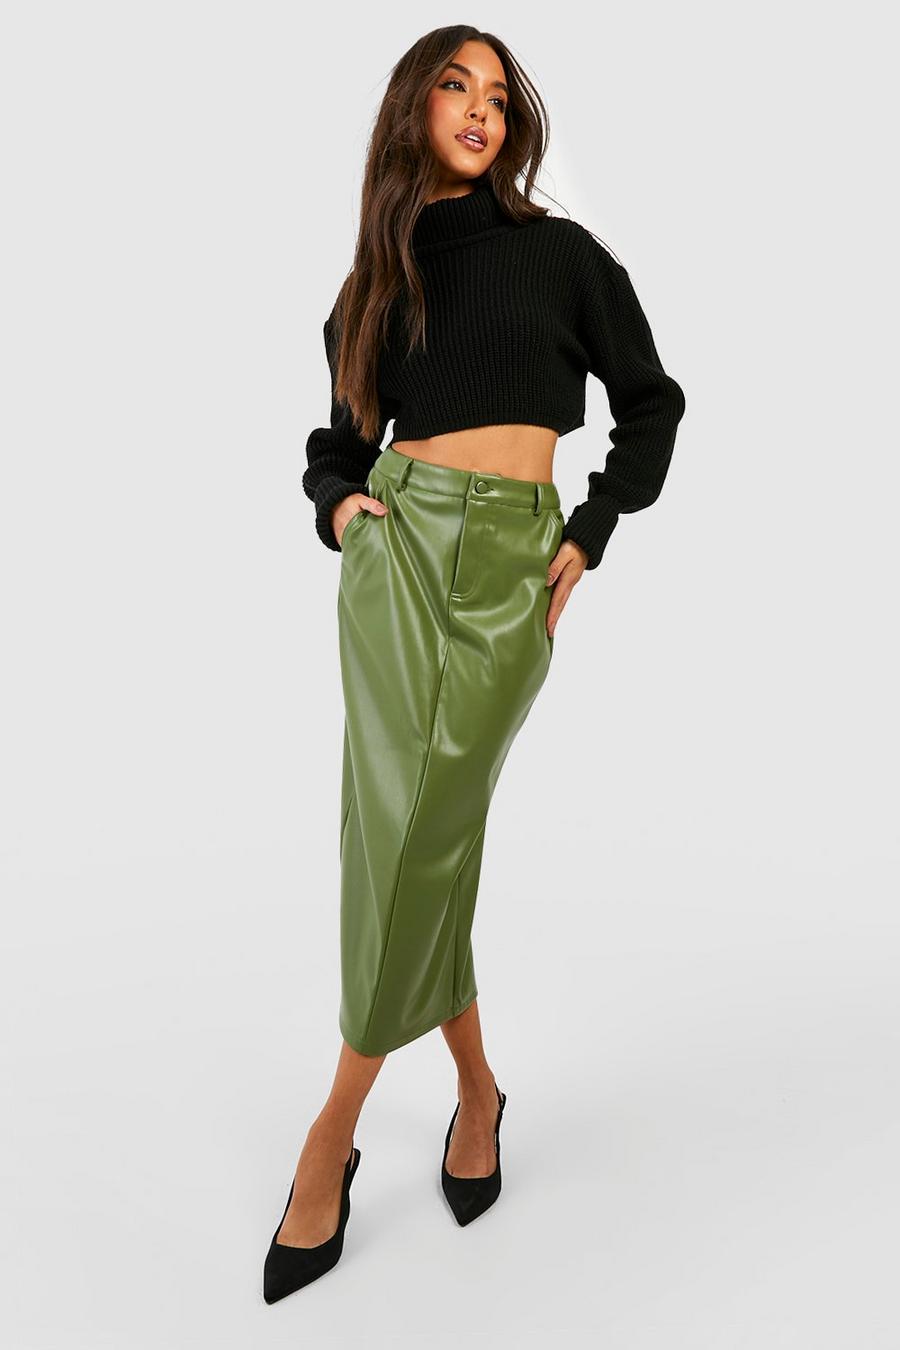 Khaki Leather Look High Waisted Midaxi Skirt